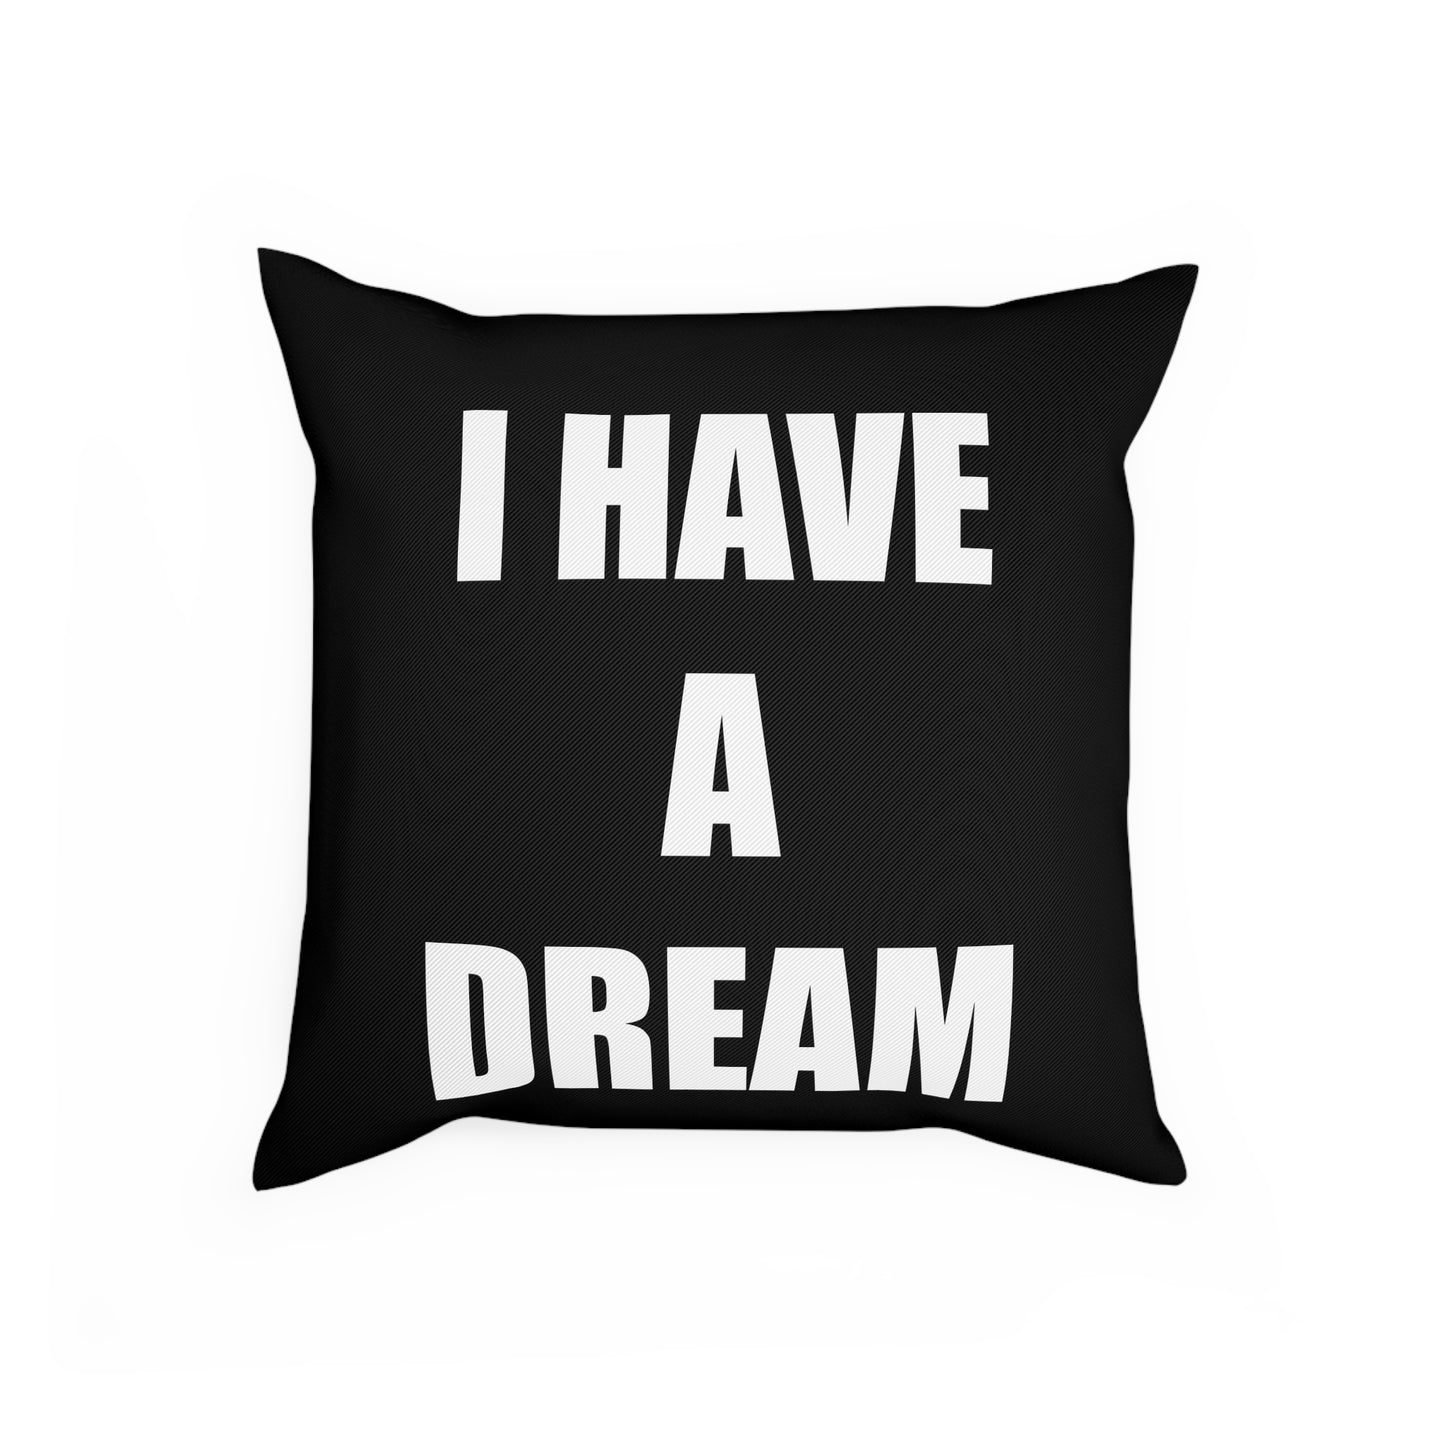 I HAVE A DREAM Cushion